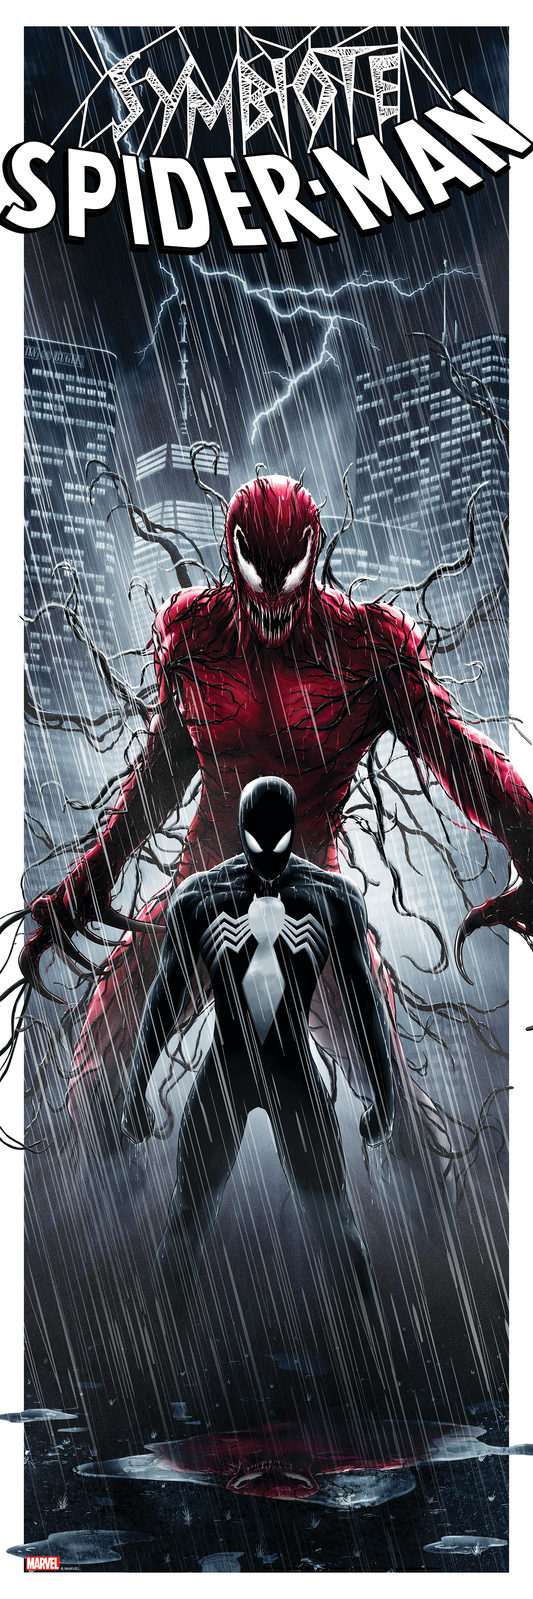 Ben Harman "Symbiote Spider-Man"